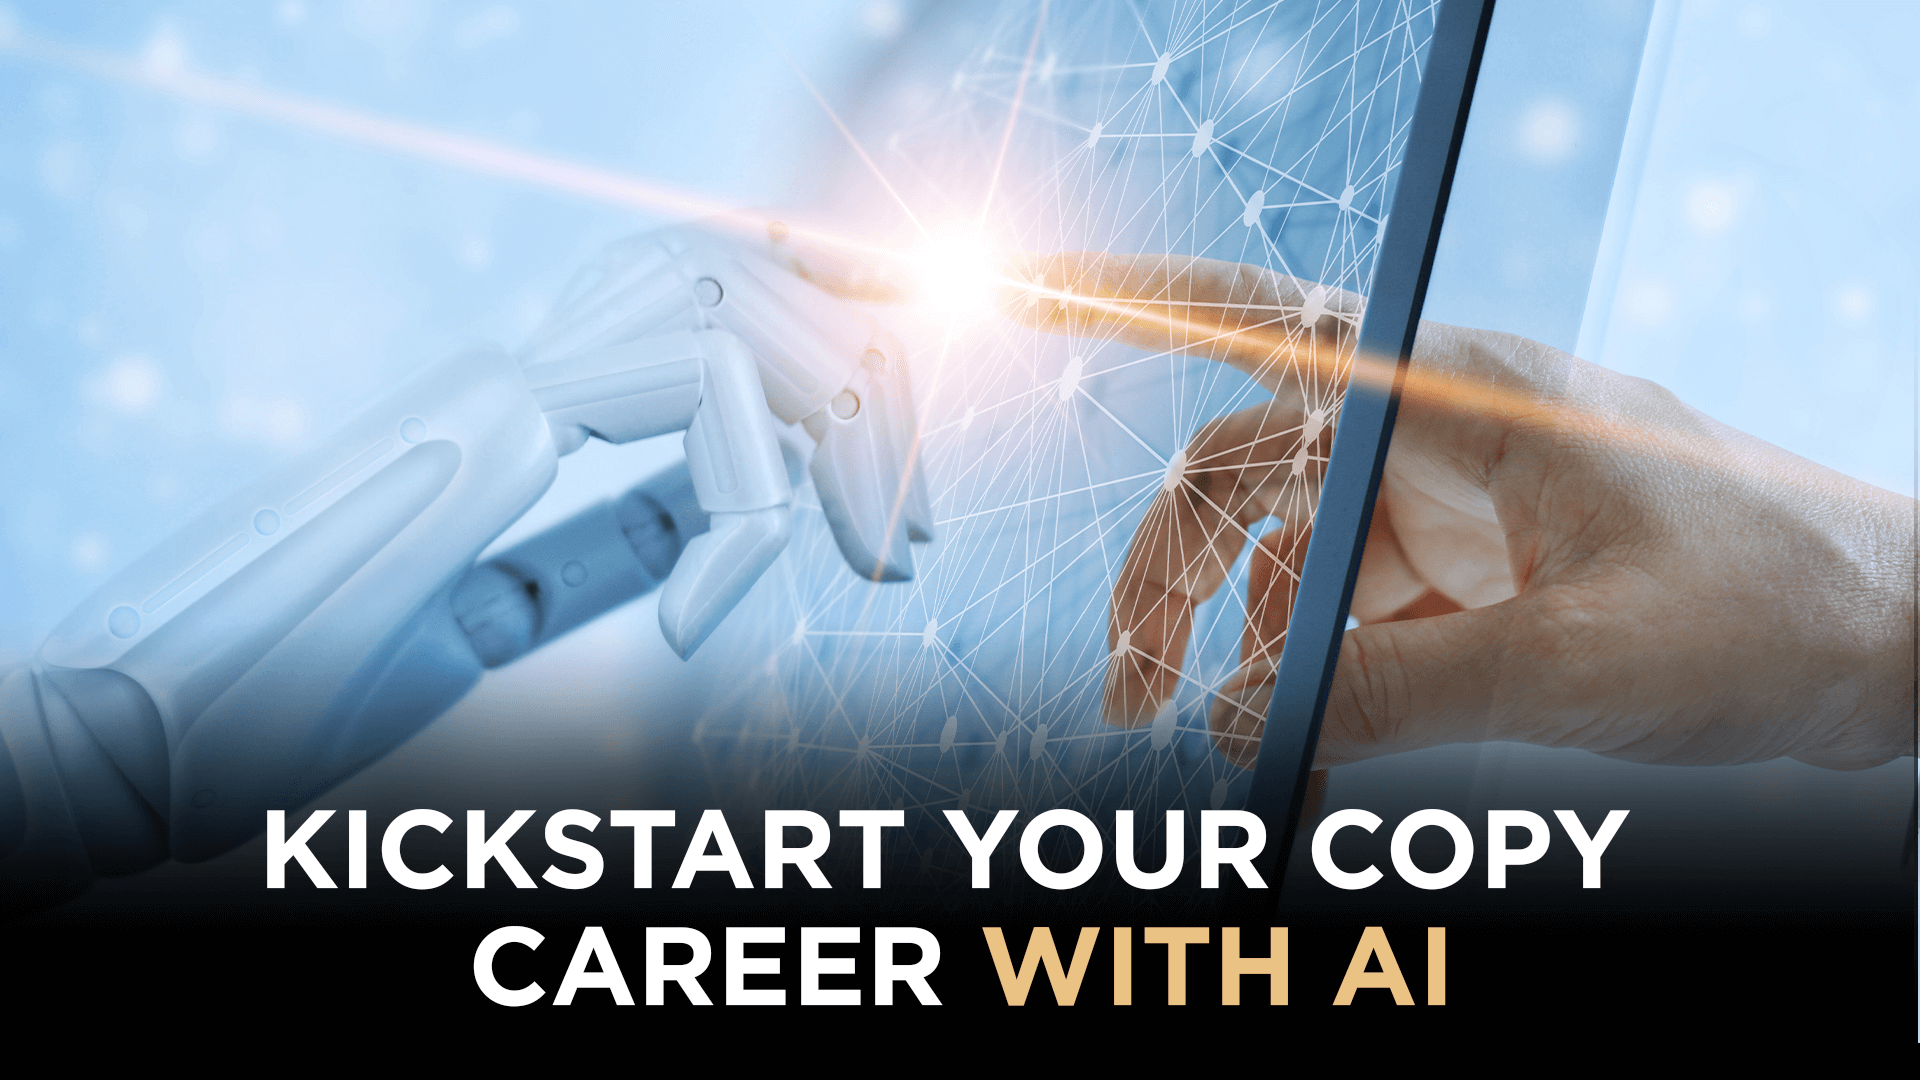 Kickstart Your Copy Career With AI